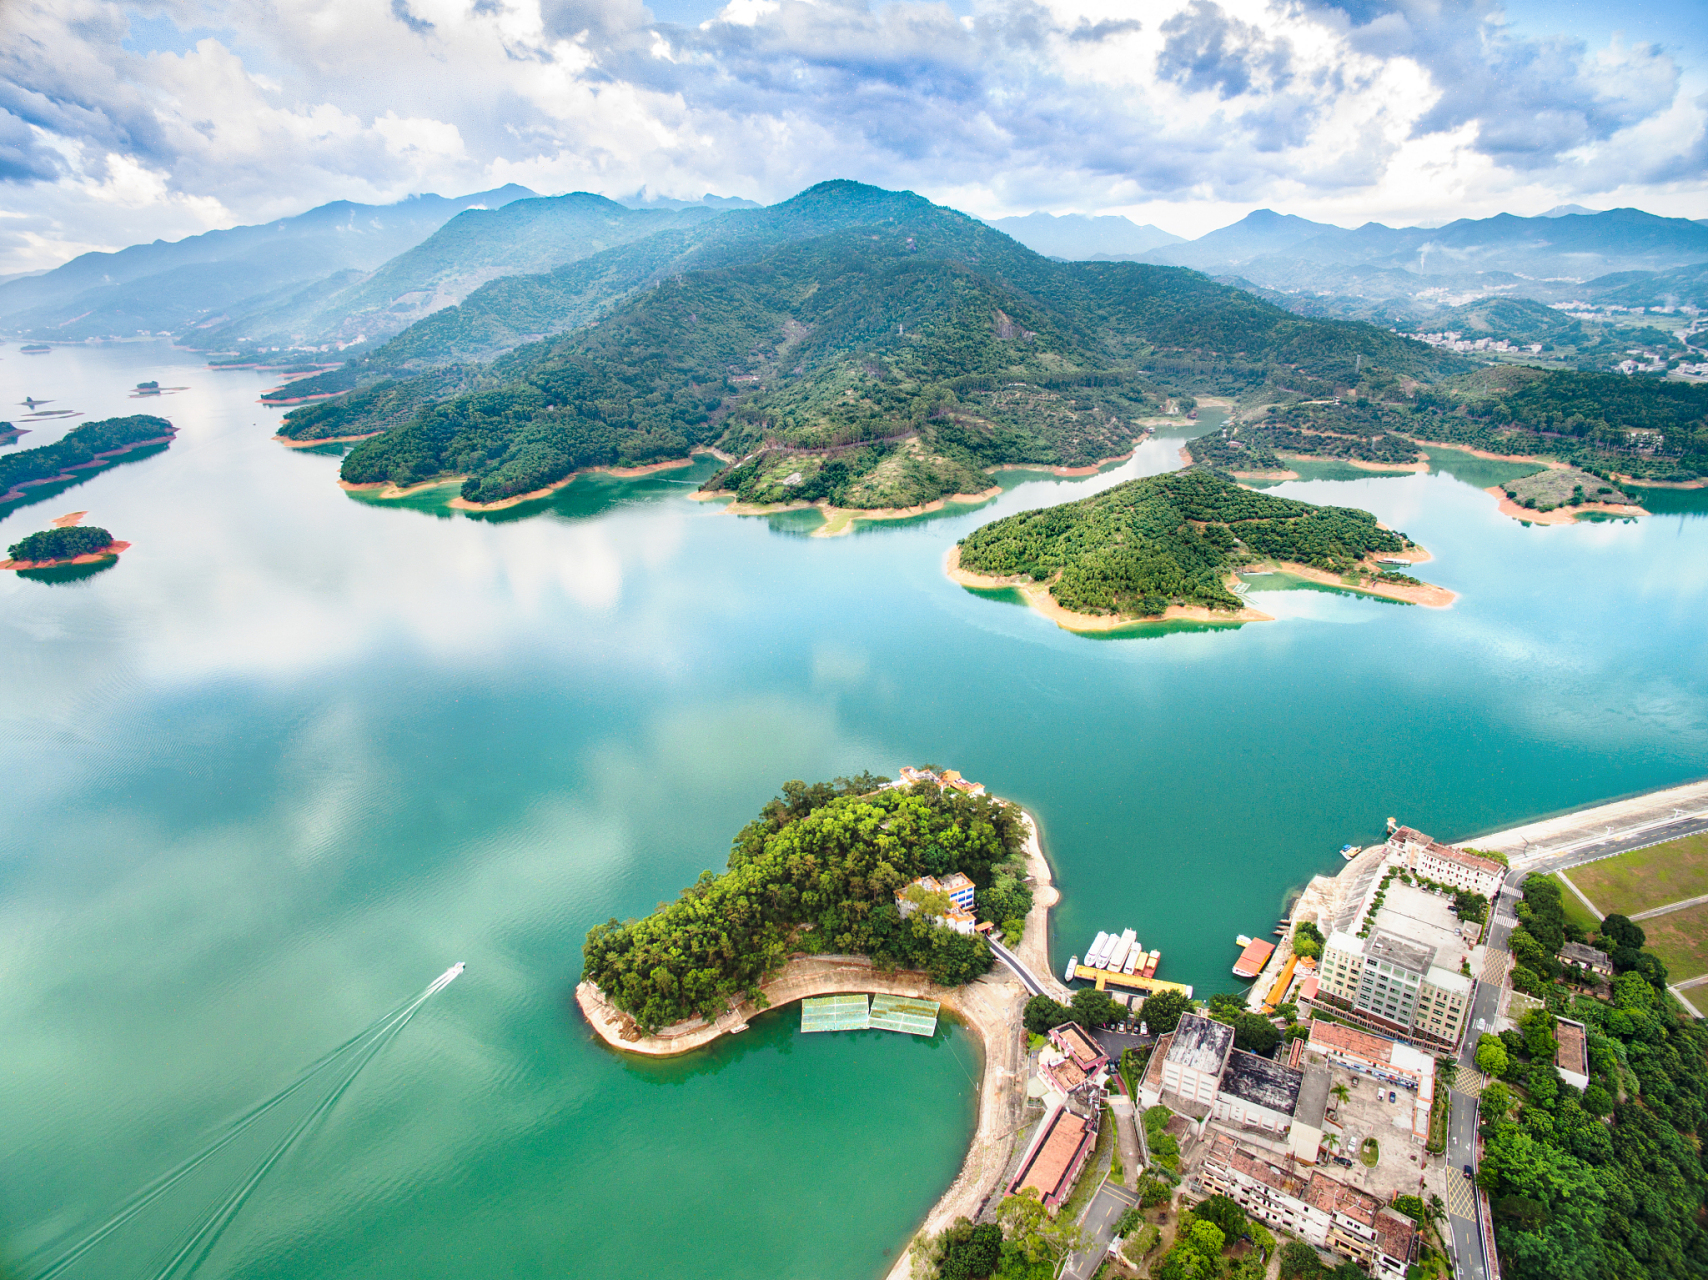 东江湖风景旅游区位于湖南省资兴市境内,是国家级风景名胜区,国家5a级